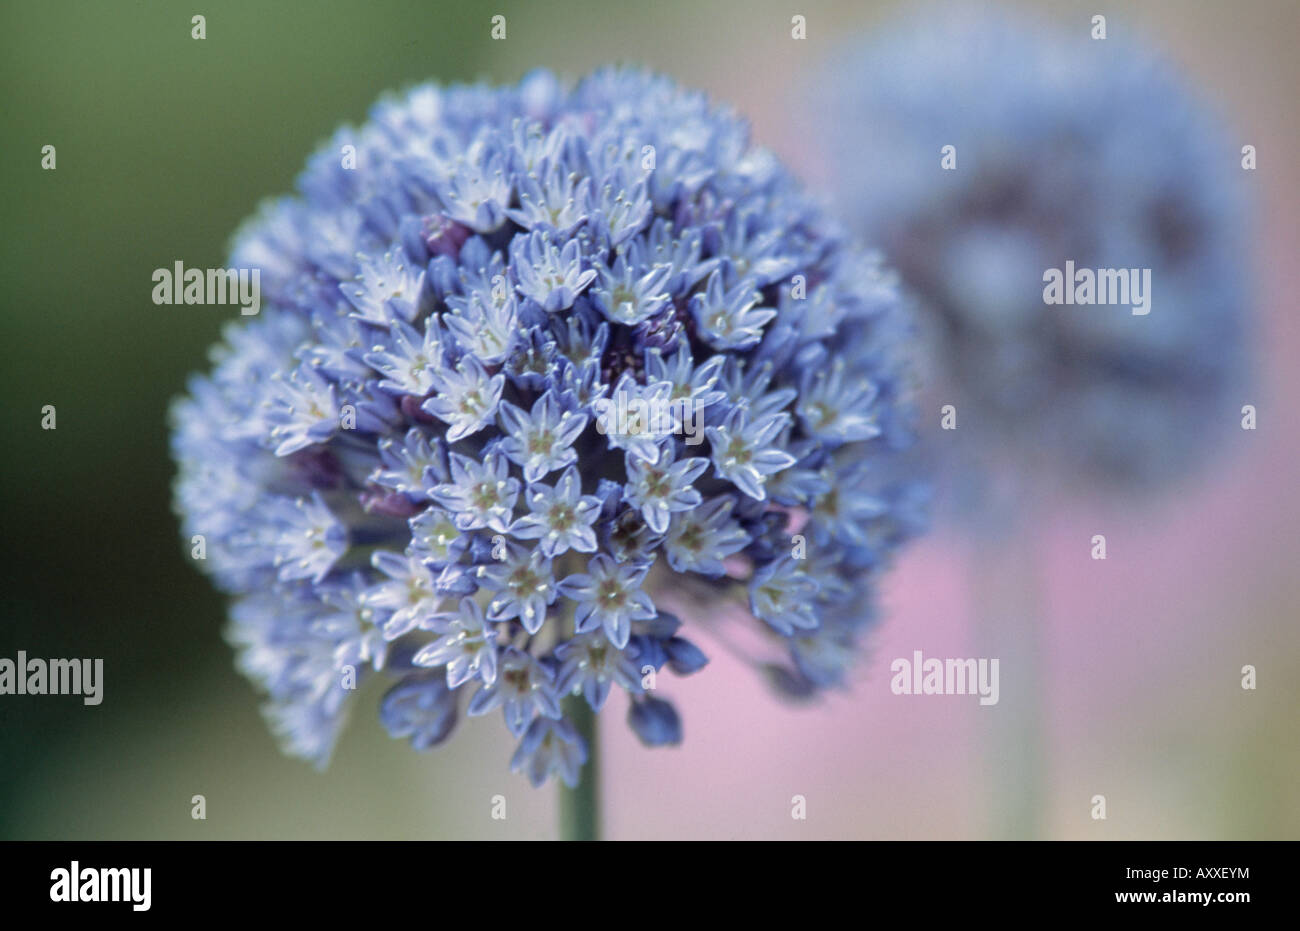 Allium, Allium caeruleum, Blue, Allium, caeruleum Stock Photo